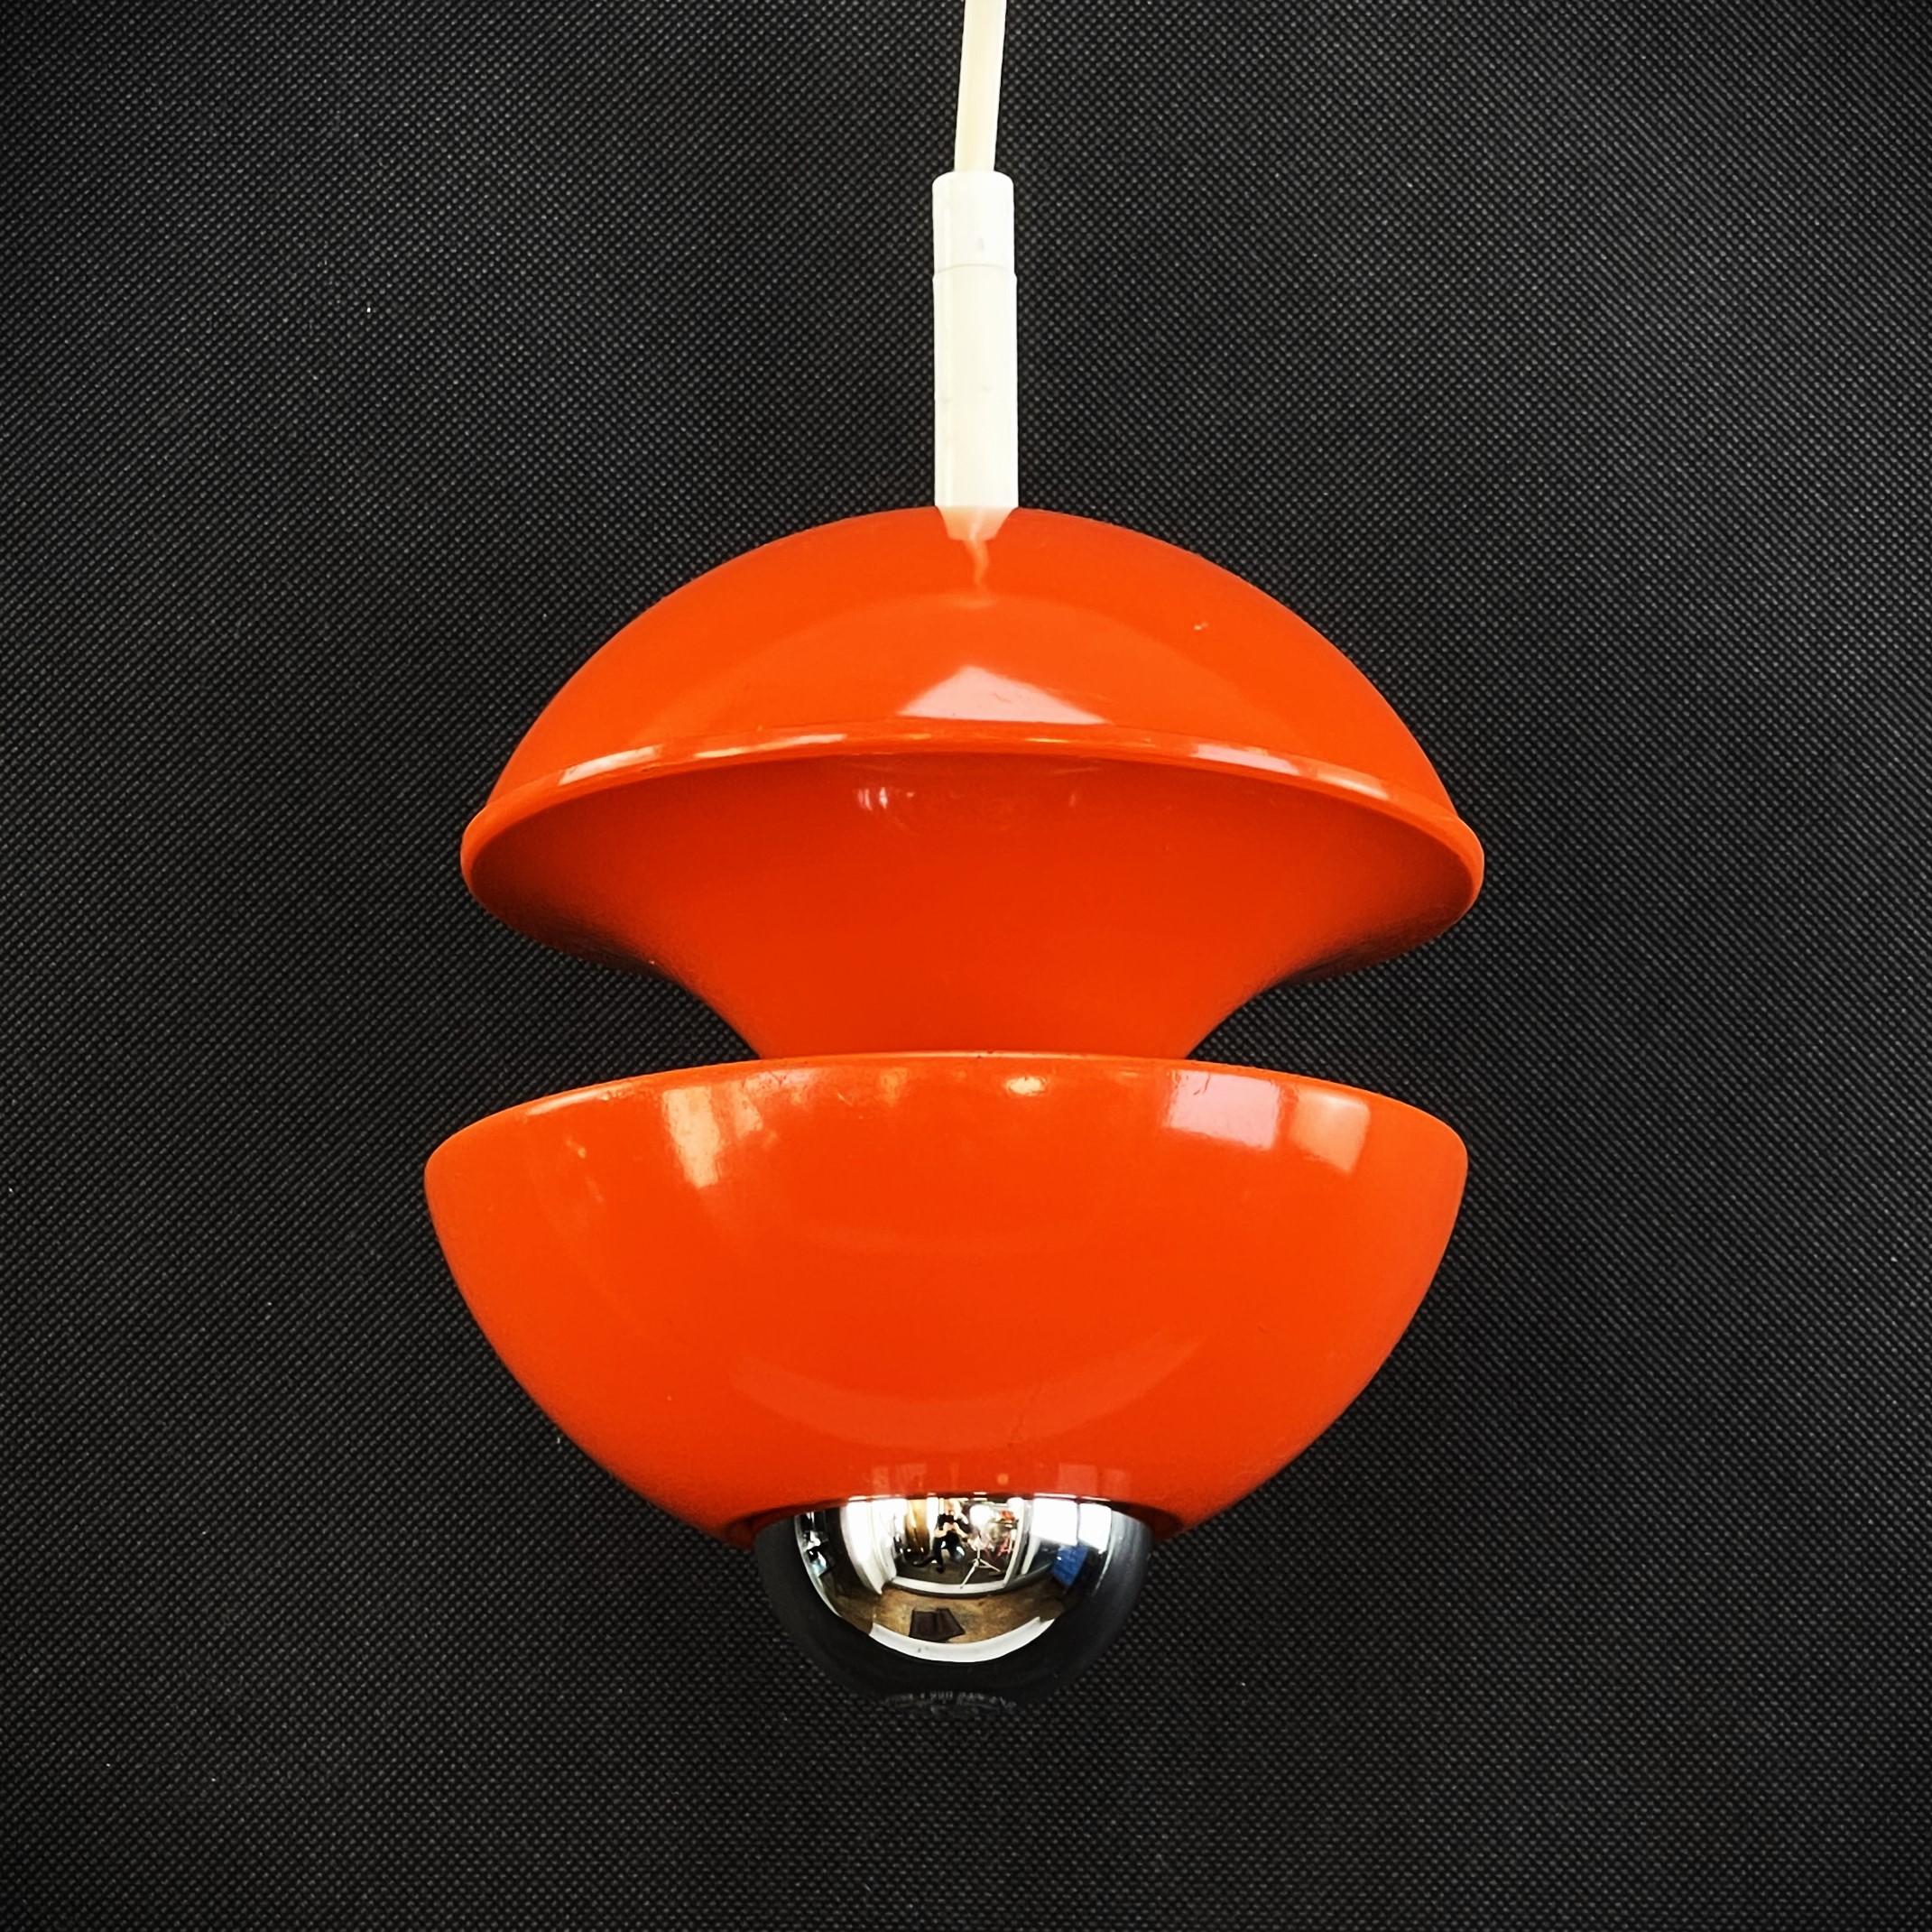 schöne SPACE Age Deckenleuchte von Richard Essig- 1970er Jahre

Die von Klaus Hempel entworfene Hängeleuchte von Kaiser Leuchte mit dem auffälligen orangefarbenen Schirm ist ein herausragendes Beispiel für zeitgenössisches Lampendesign. Mit einer